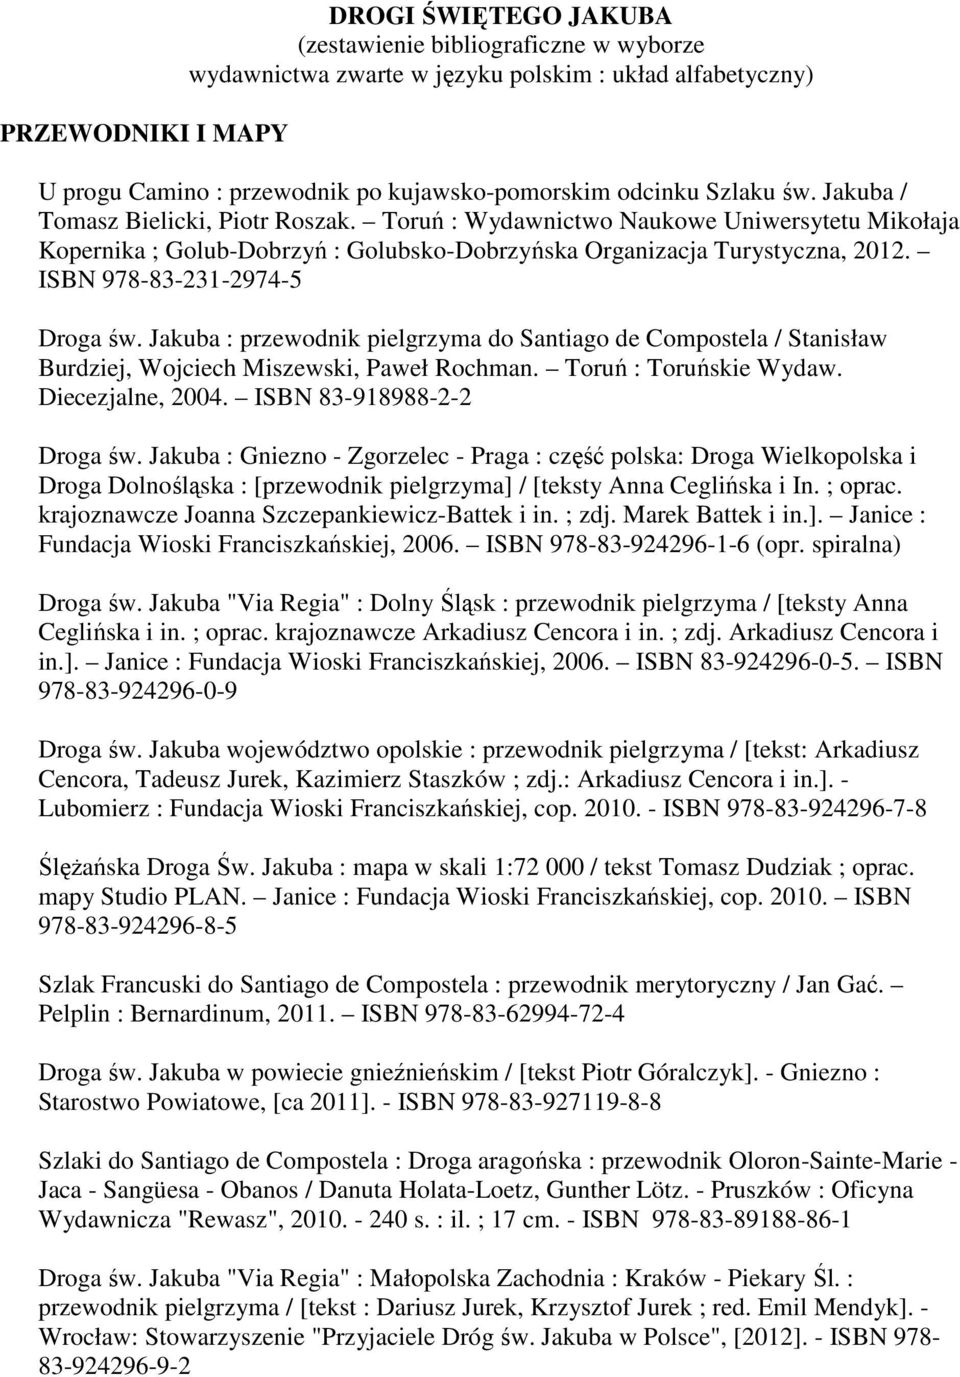 ISBN 978-83-231-2974-5 Droga św. Jakuba : przewodnik pielgrzyma do Santiago de Compostela / Stanisław Burdziej, Wojciech Miszewski, Paweł Rochman. Toruń : Toruńskie Wydaw. Diecezjalne, 2004.